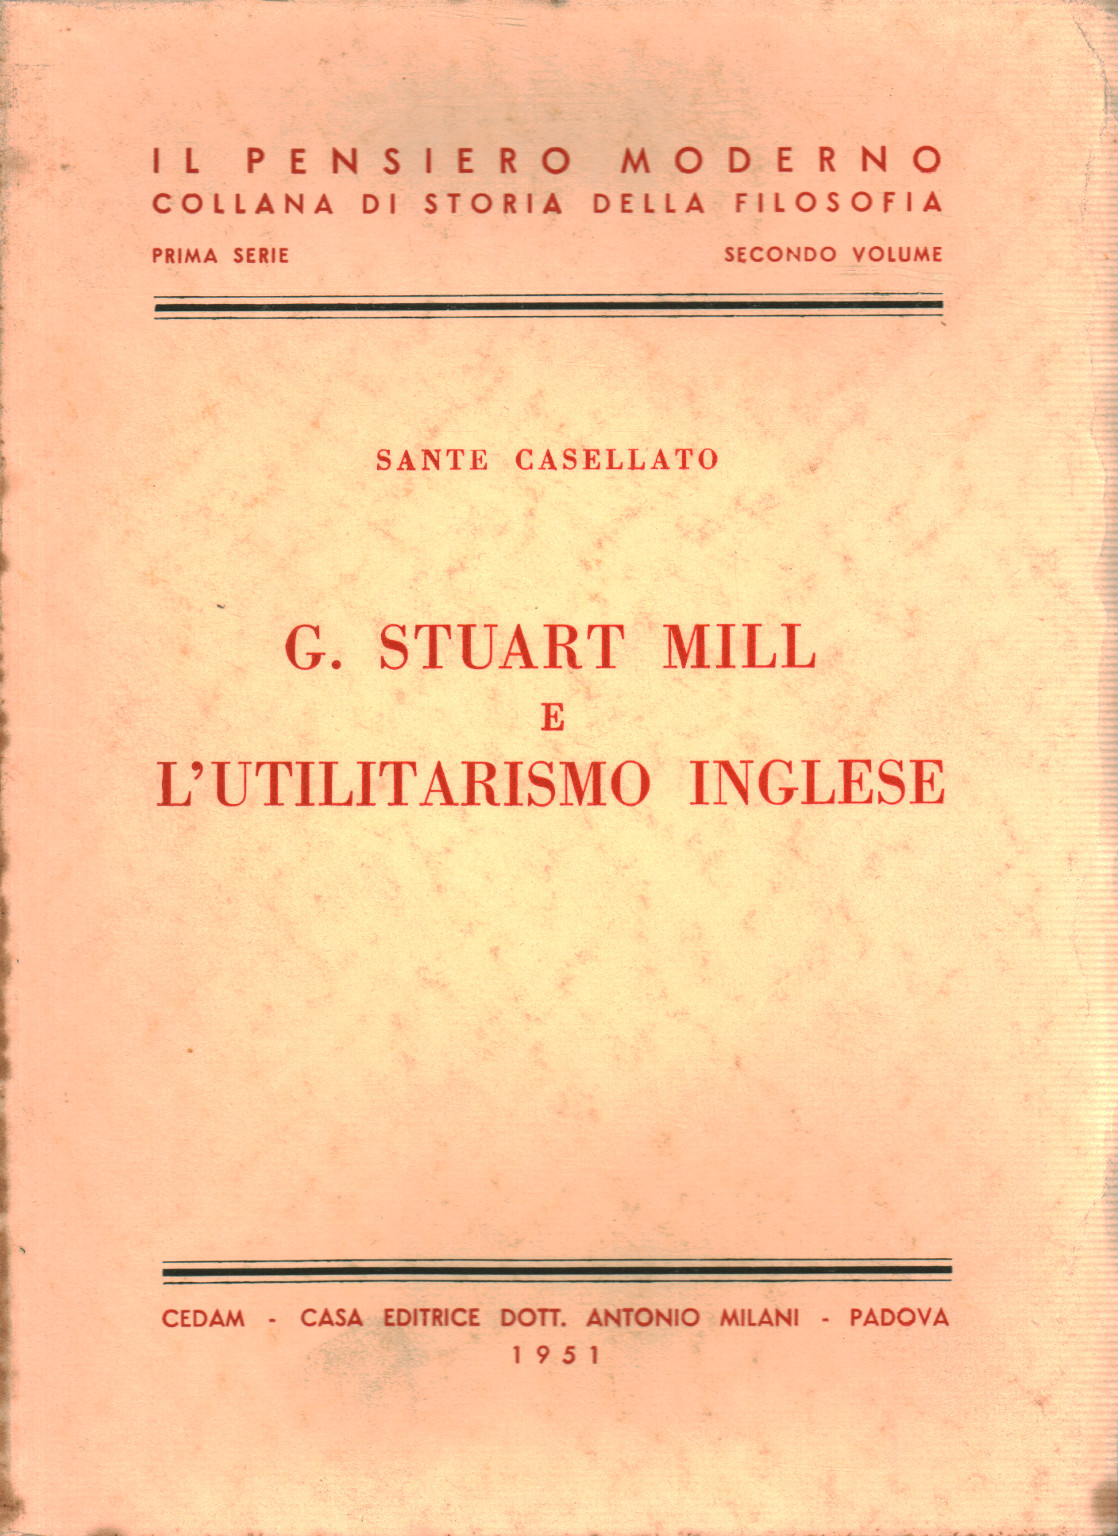 G. Stuart Mill and utilitarianism English, Sante Casellato